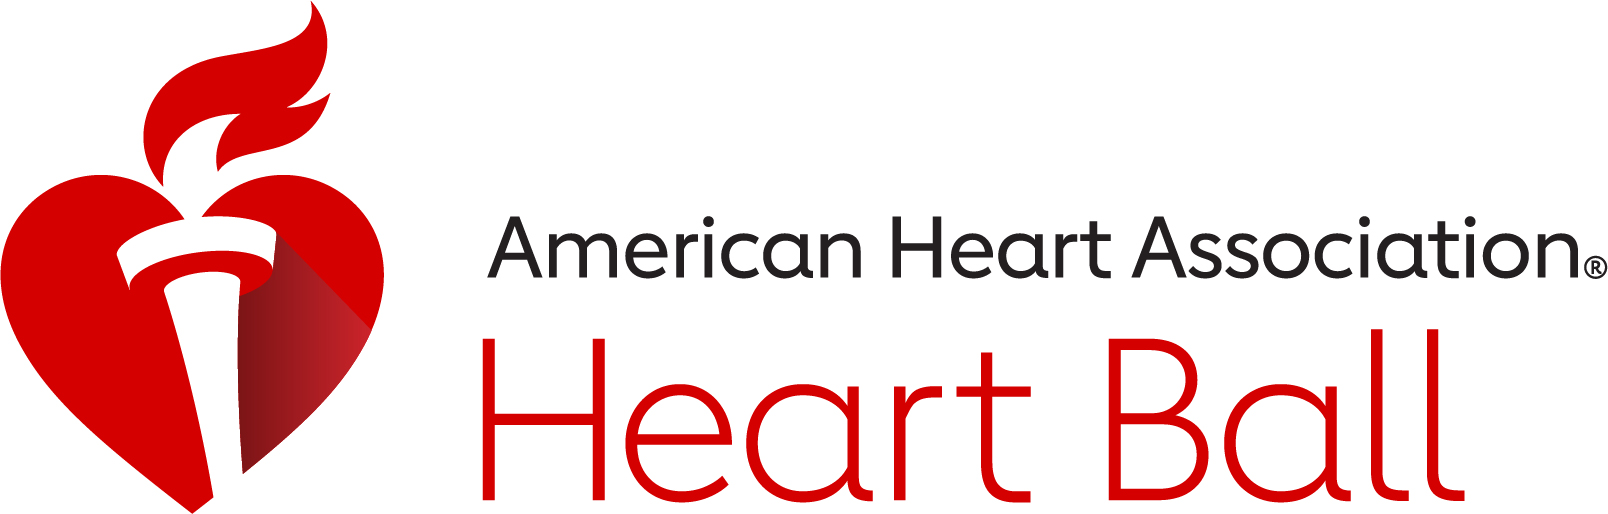 American Heart Association Heart Ball